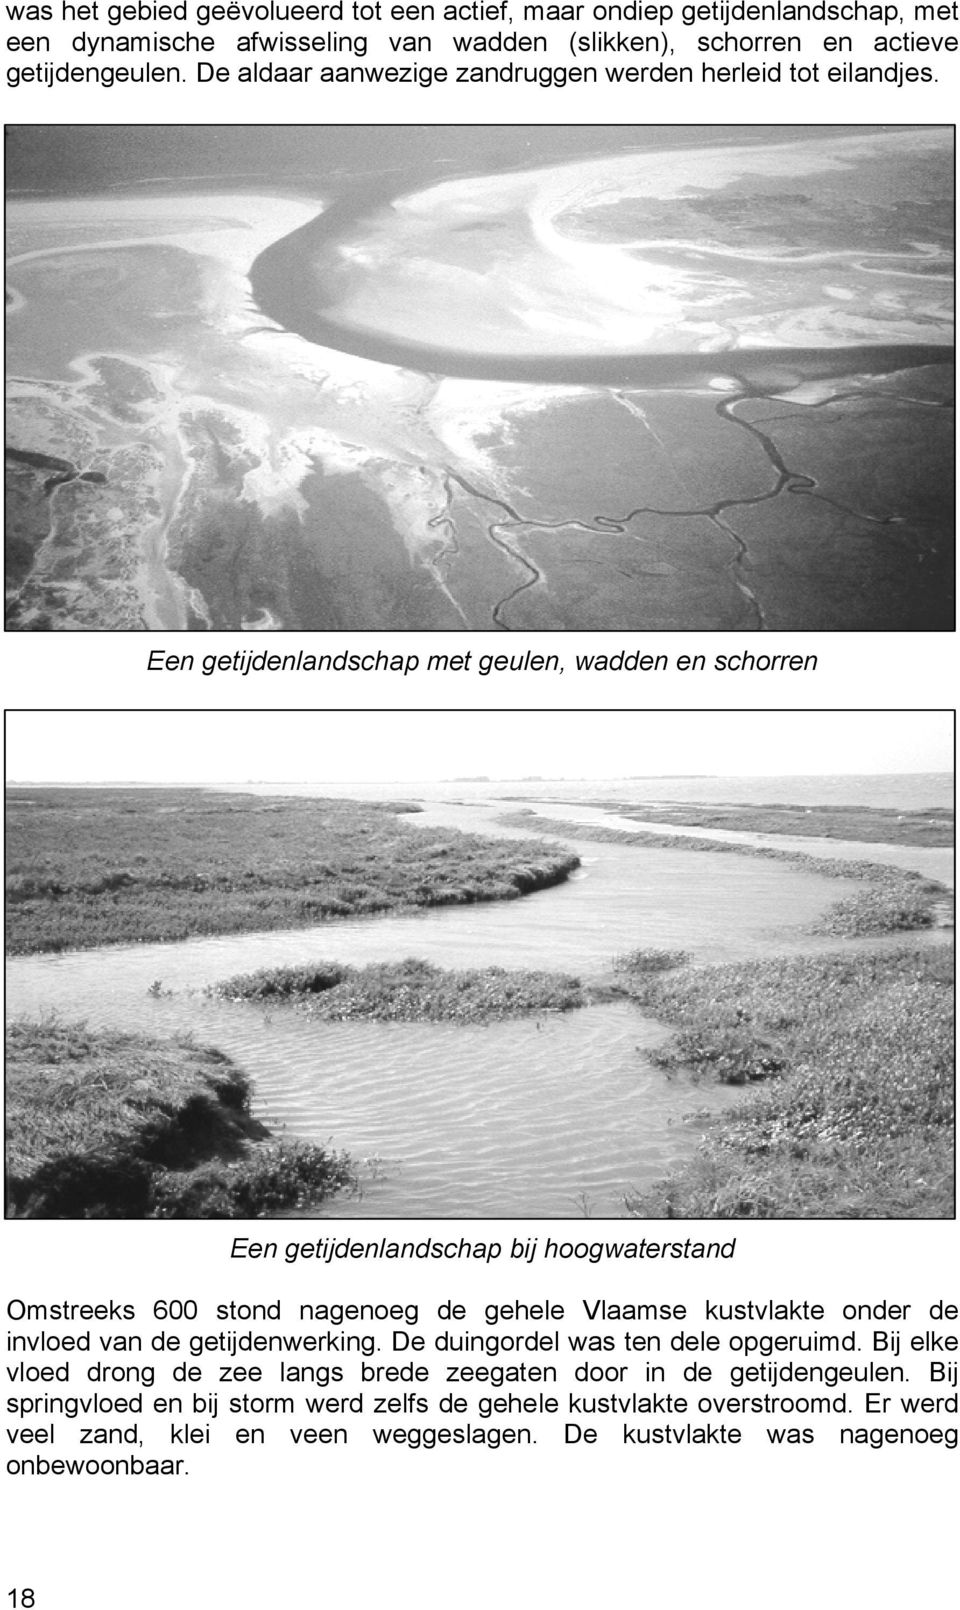 Een getijdenlandschap met geulen, wadden en schorren Een getijdenlandschap bij hoogwaterstand Omstreeks 600 stond nagenoeg de gehele Vlaamse kustvlakte onder de invloed van